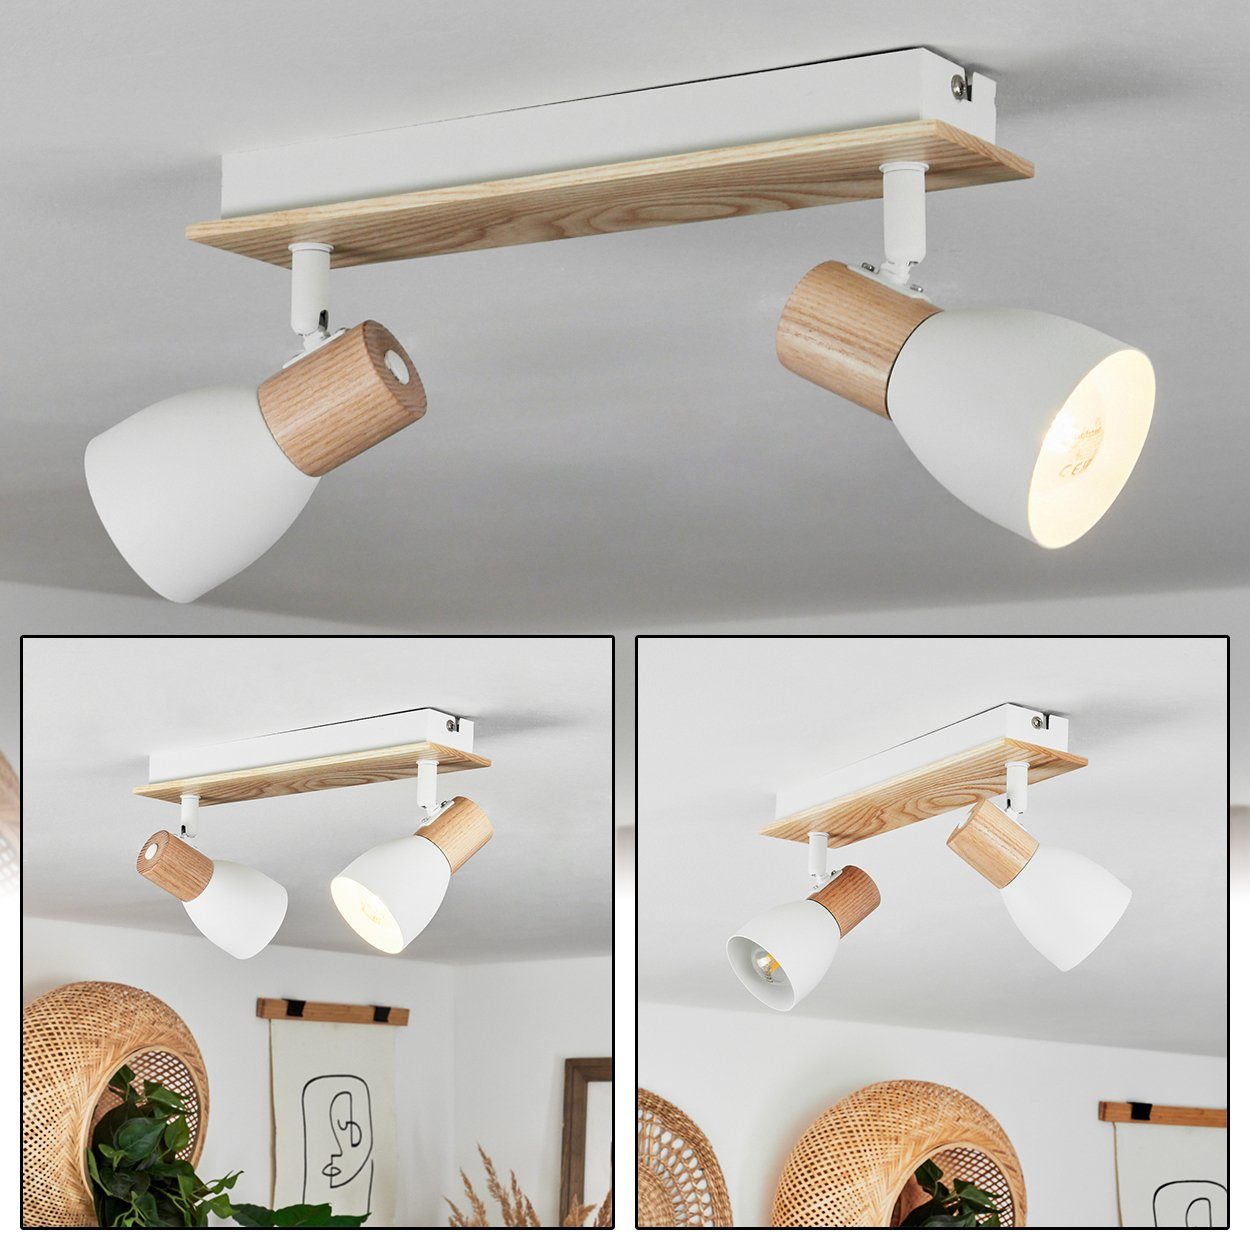 Natur/Weiß, aus Deckenlampe »Marostica« in moderne Deckenleuchte hofstein ohne Leuchtmittel Metall/Holz